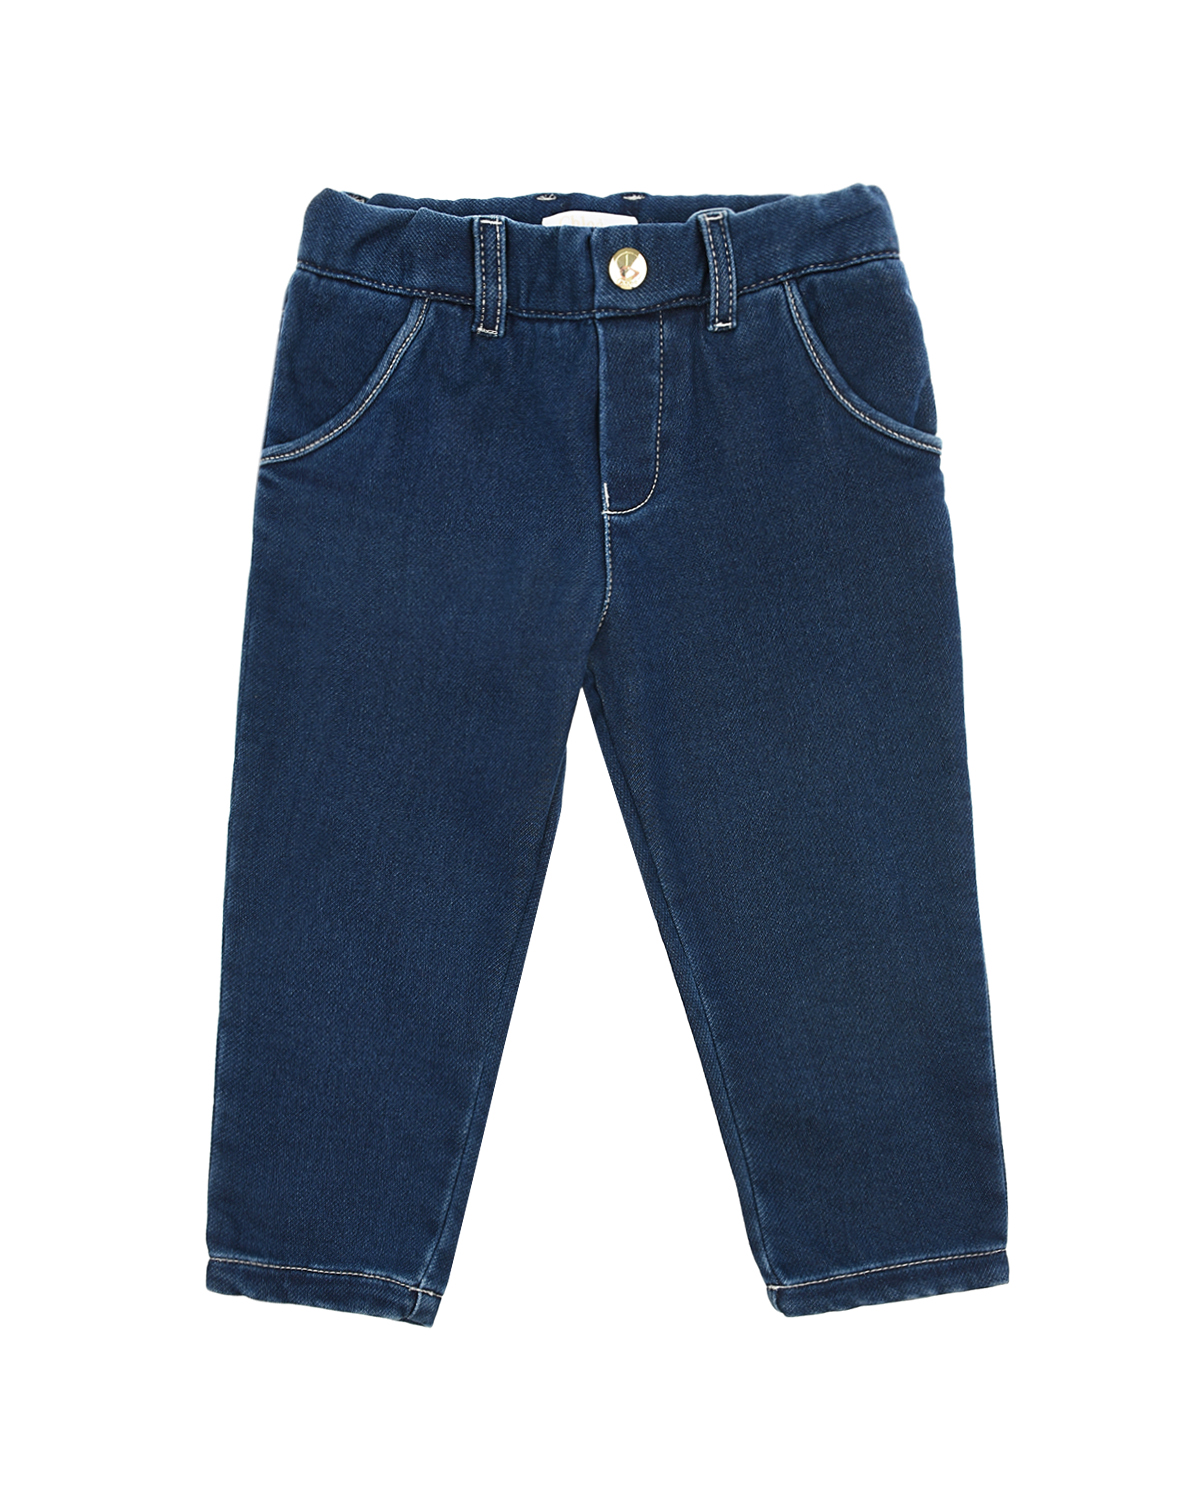 Синие джинсы прямого кроя Chloe детские, размер 86, цвет синий - фото 1